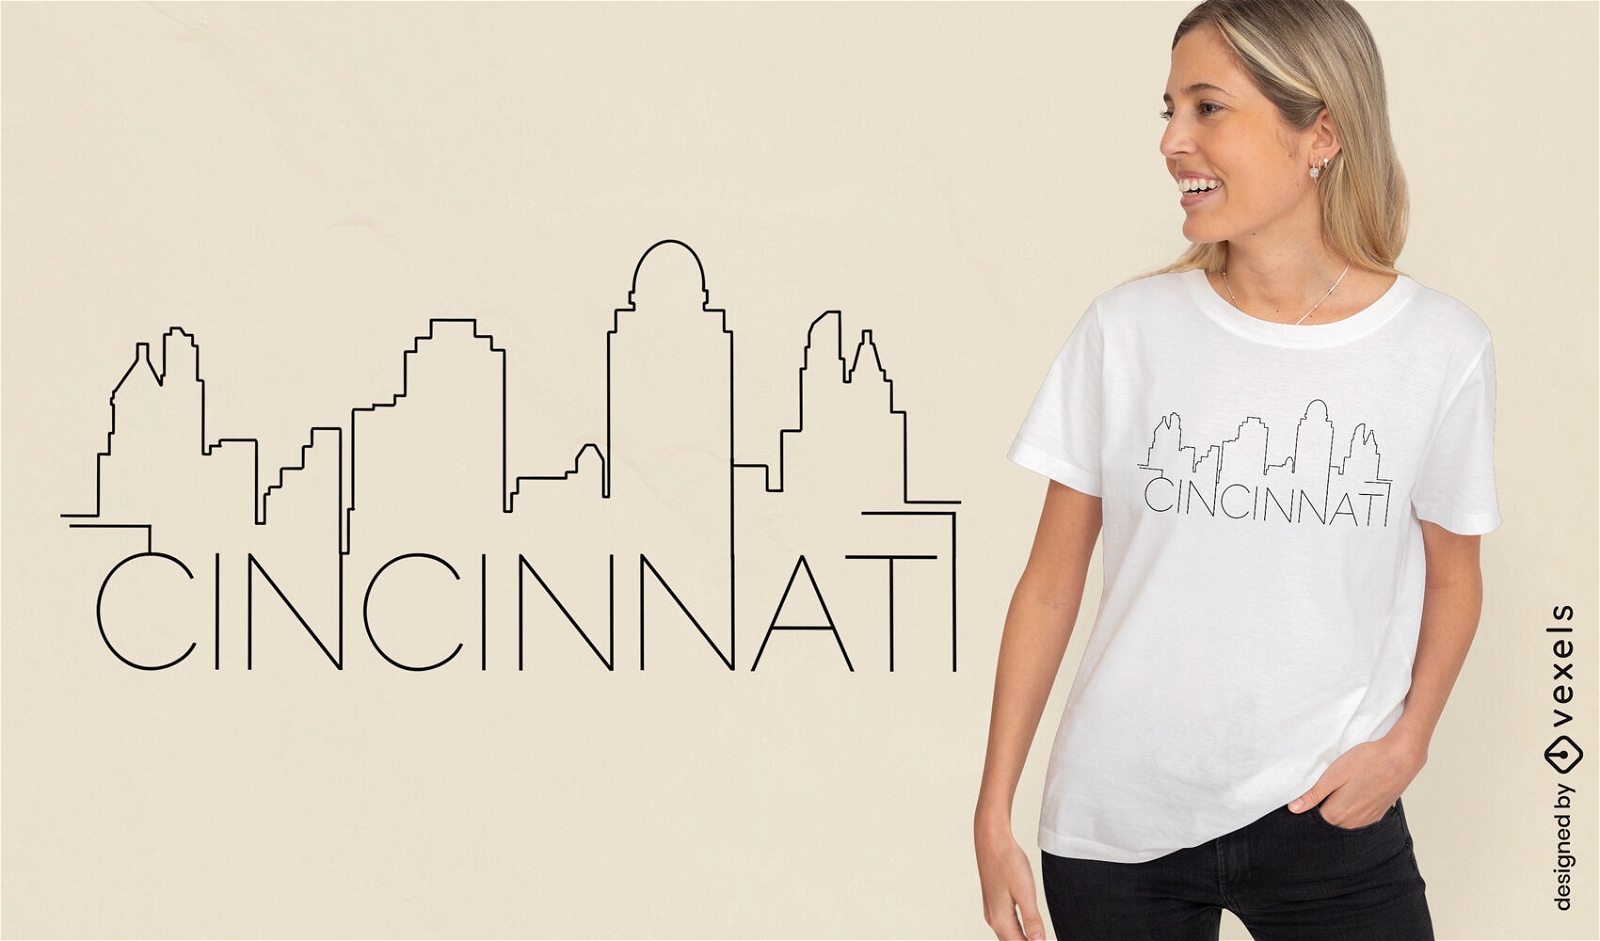 Dise?o de camiseta del horizonte de Cincinnati